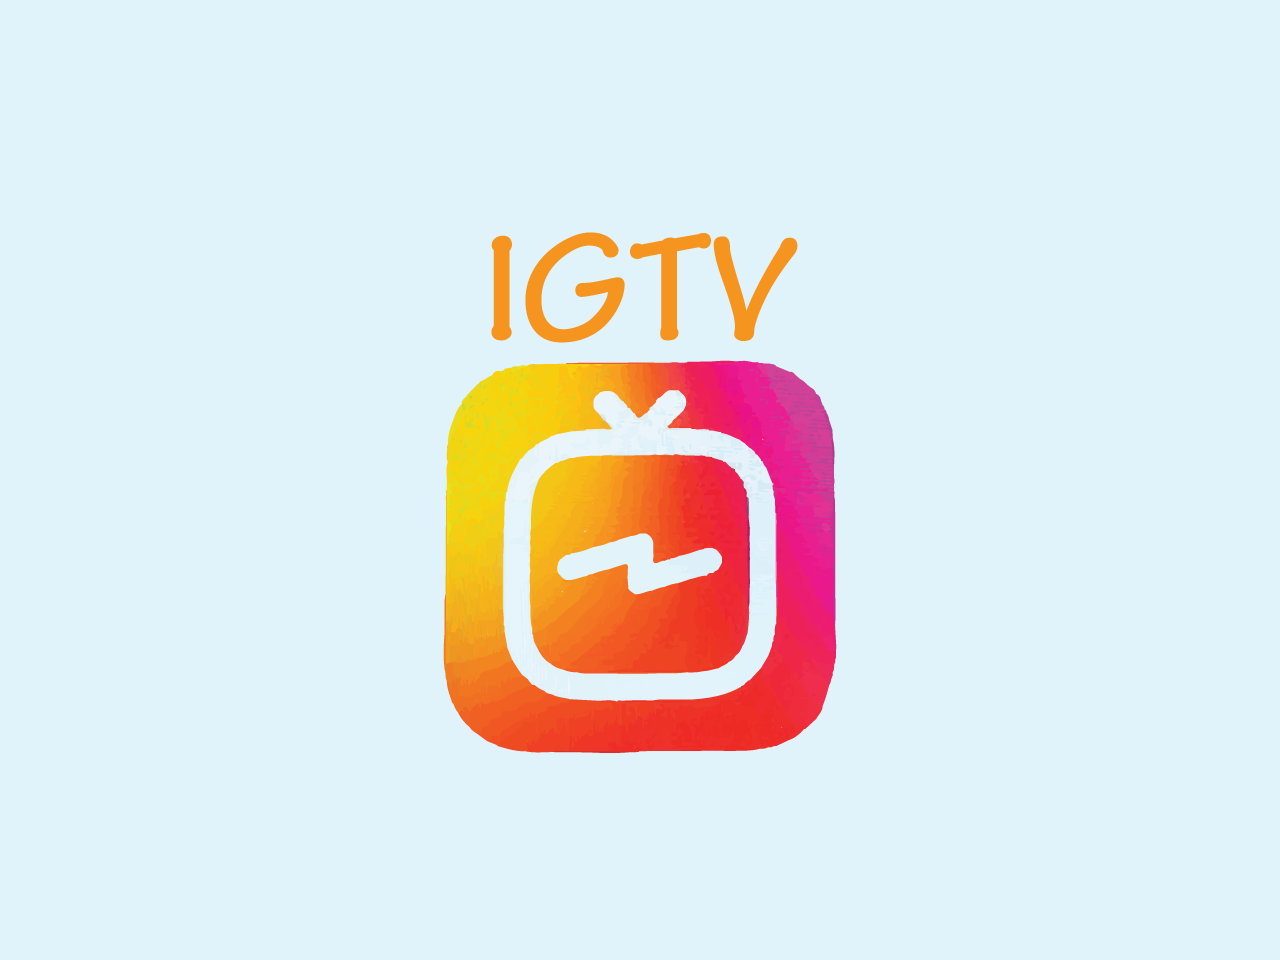 اینستاگرام به دلیل عدم استفاده شدن از اپلیکیشن IGTV آن را حذف می کند